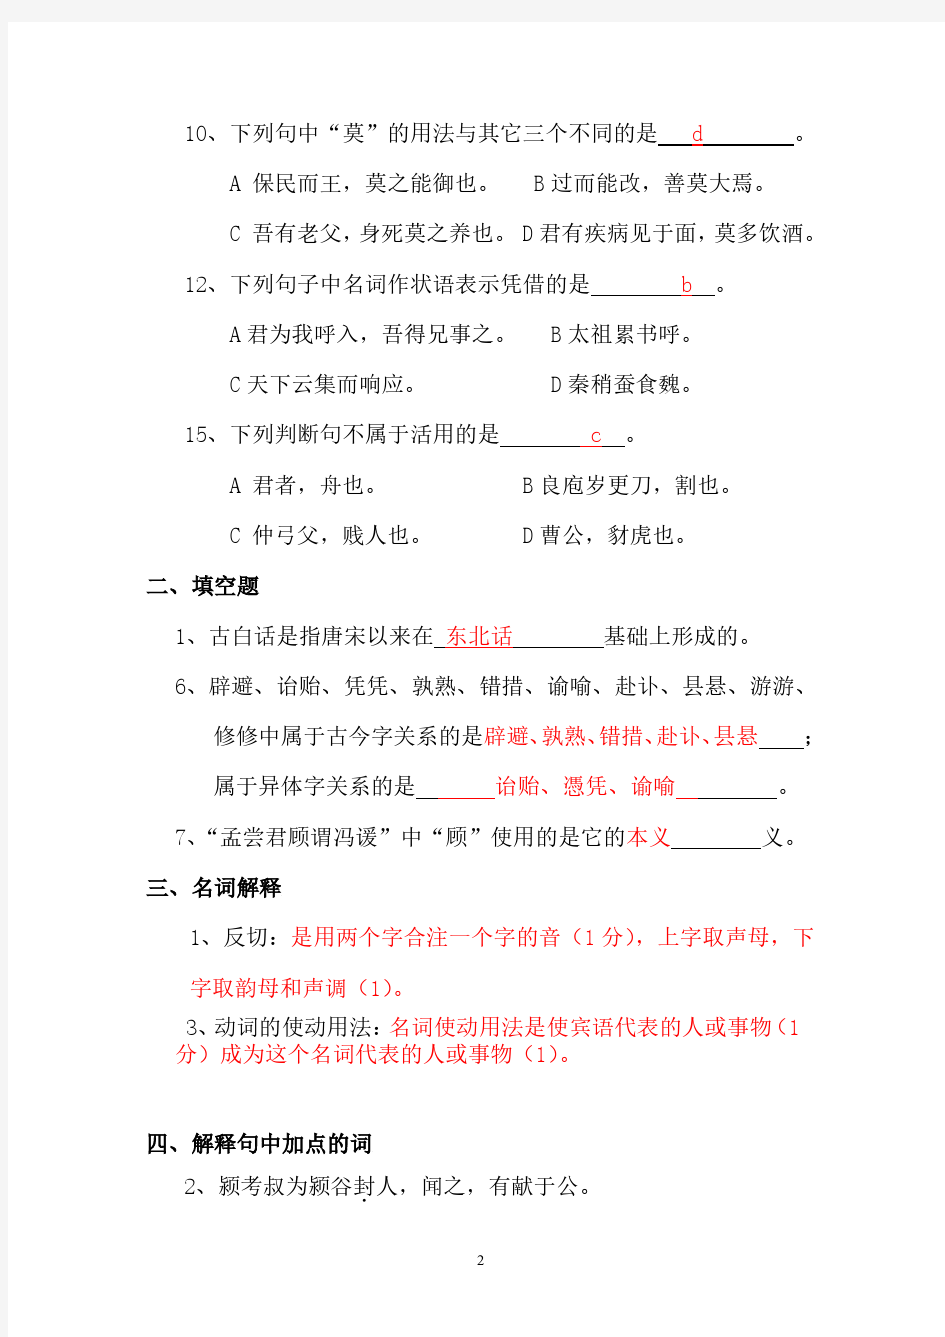 古代汉语试题库(2020年10月整理).pdf